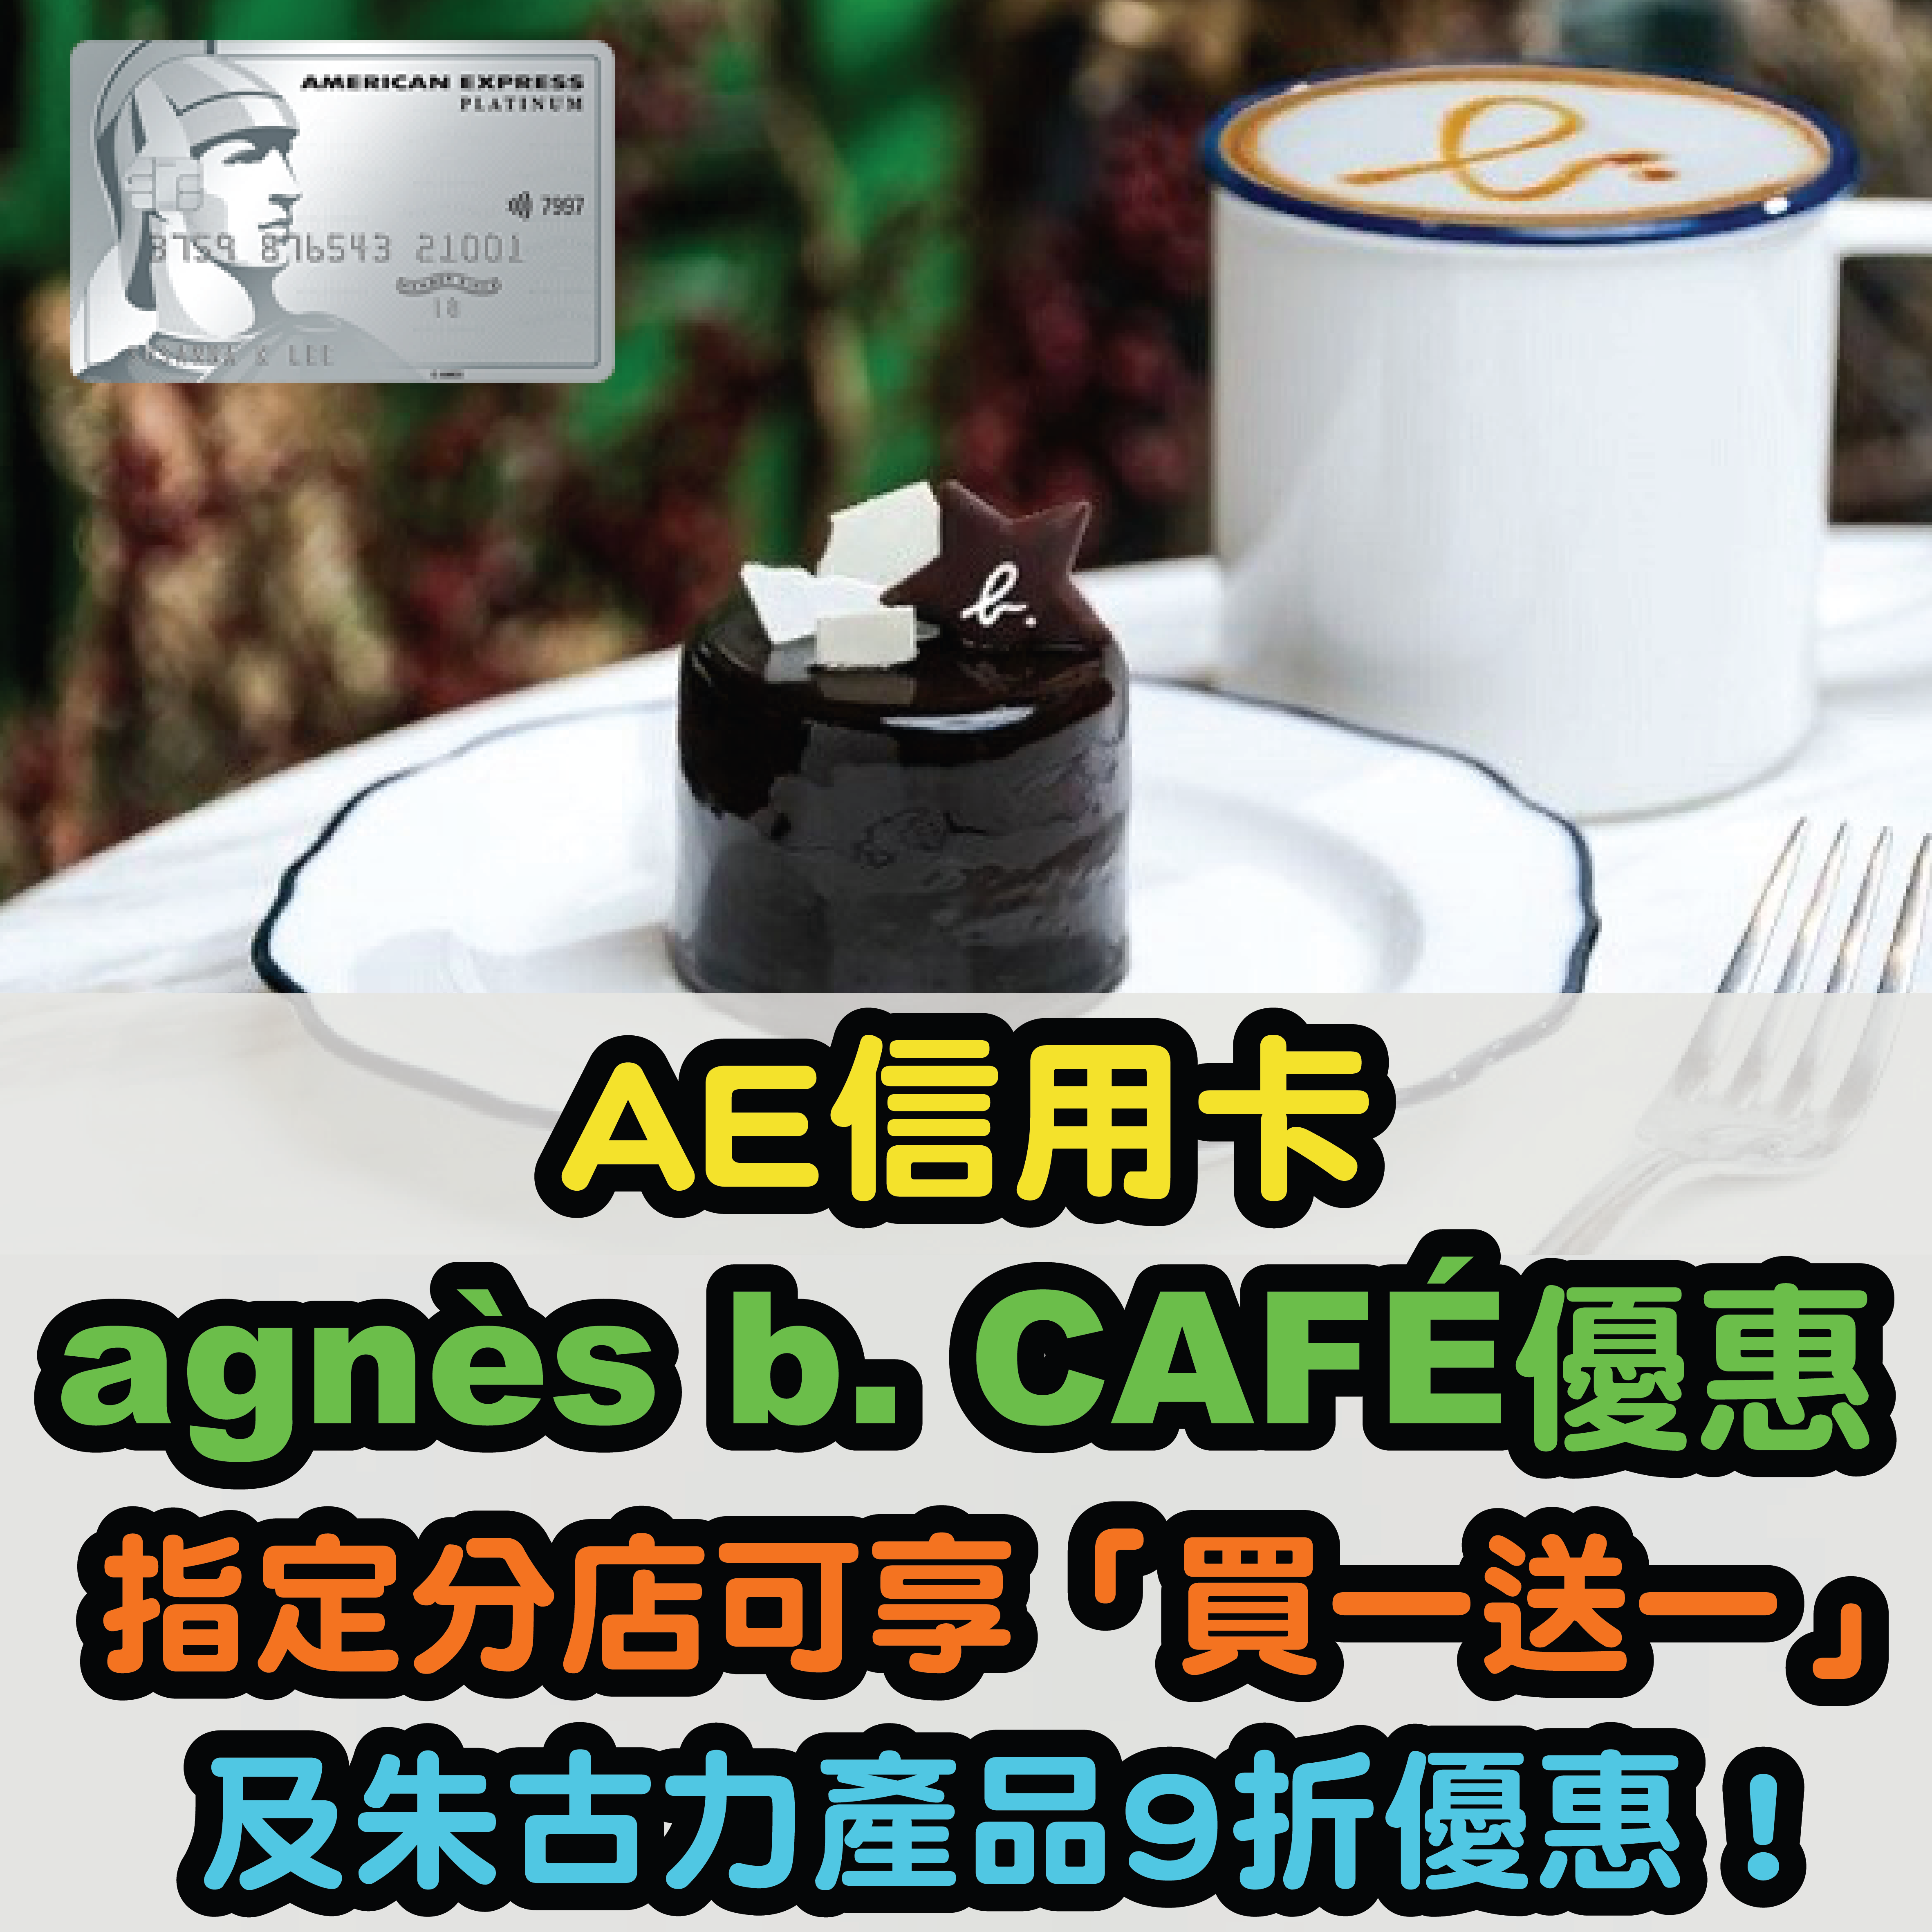 【AE信用卡agnès b. CAFÉ優惠】指定分店可享「買一送一」及朱古力產品9折優惠！